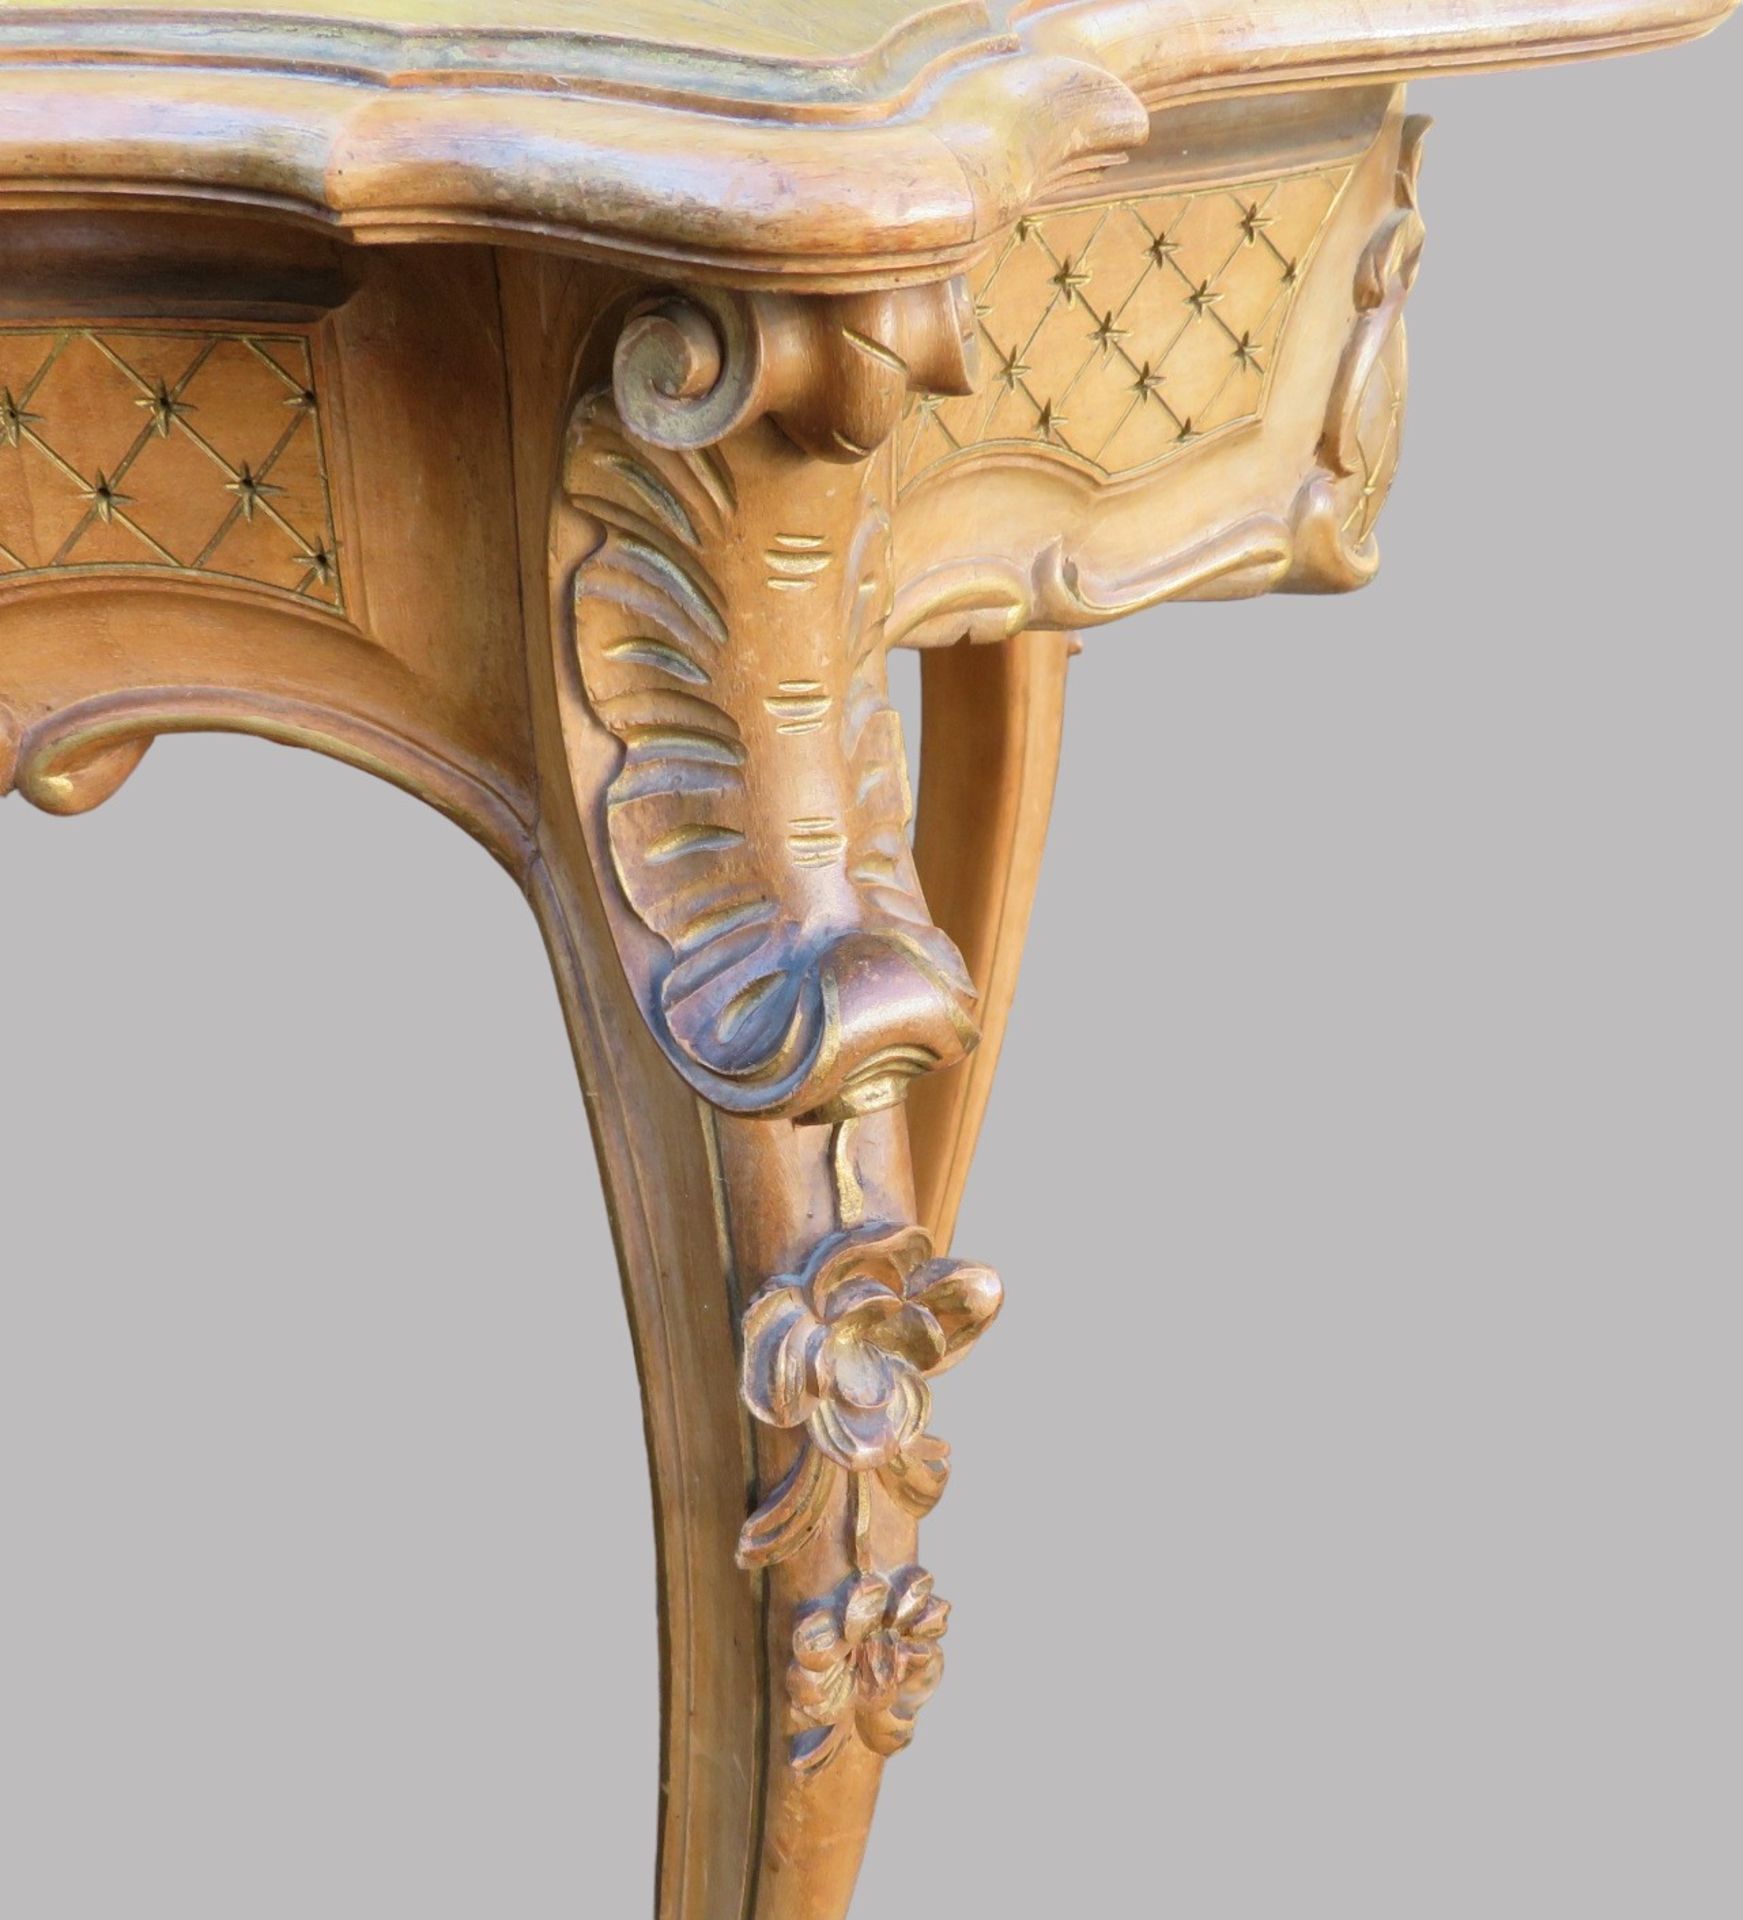 Tisch, Rokokostil, 19. Jahrhundert, Nussbaum beschnitzt, rest.bed., 74 x 90 x 54 cm. - Image 3 of 3